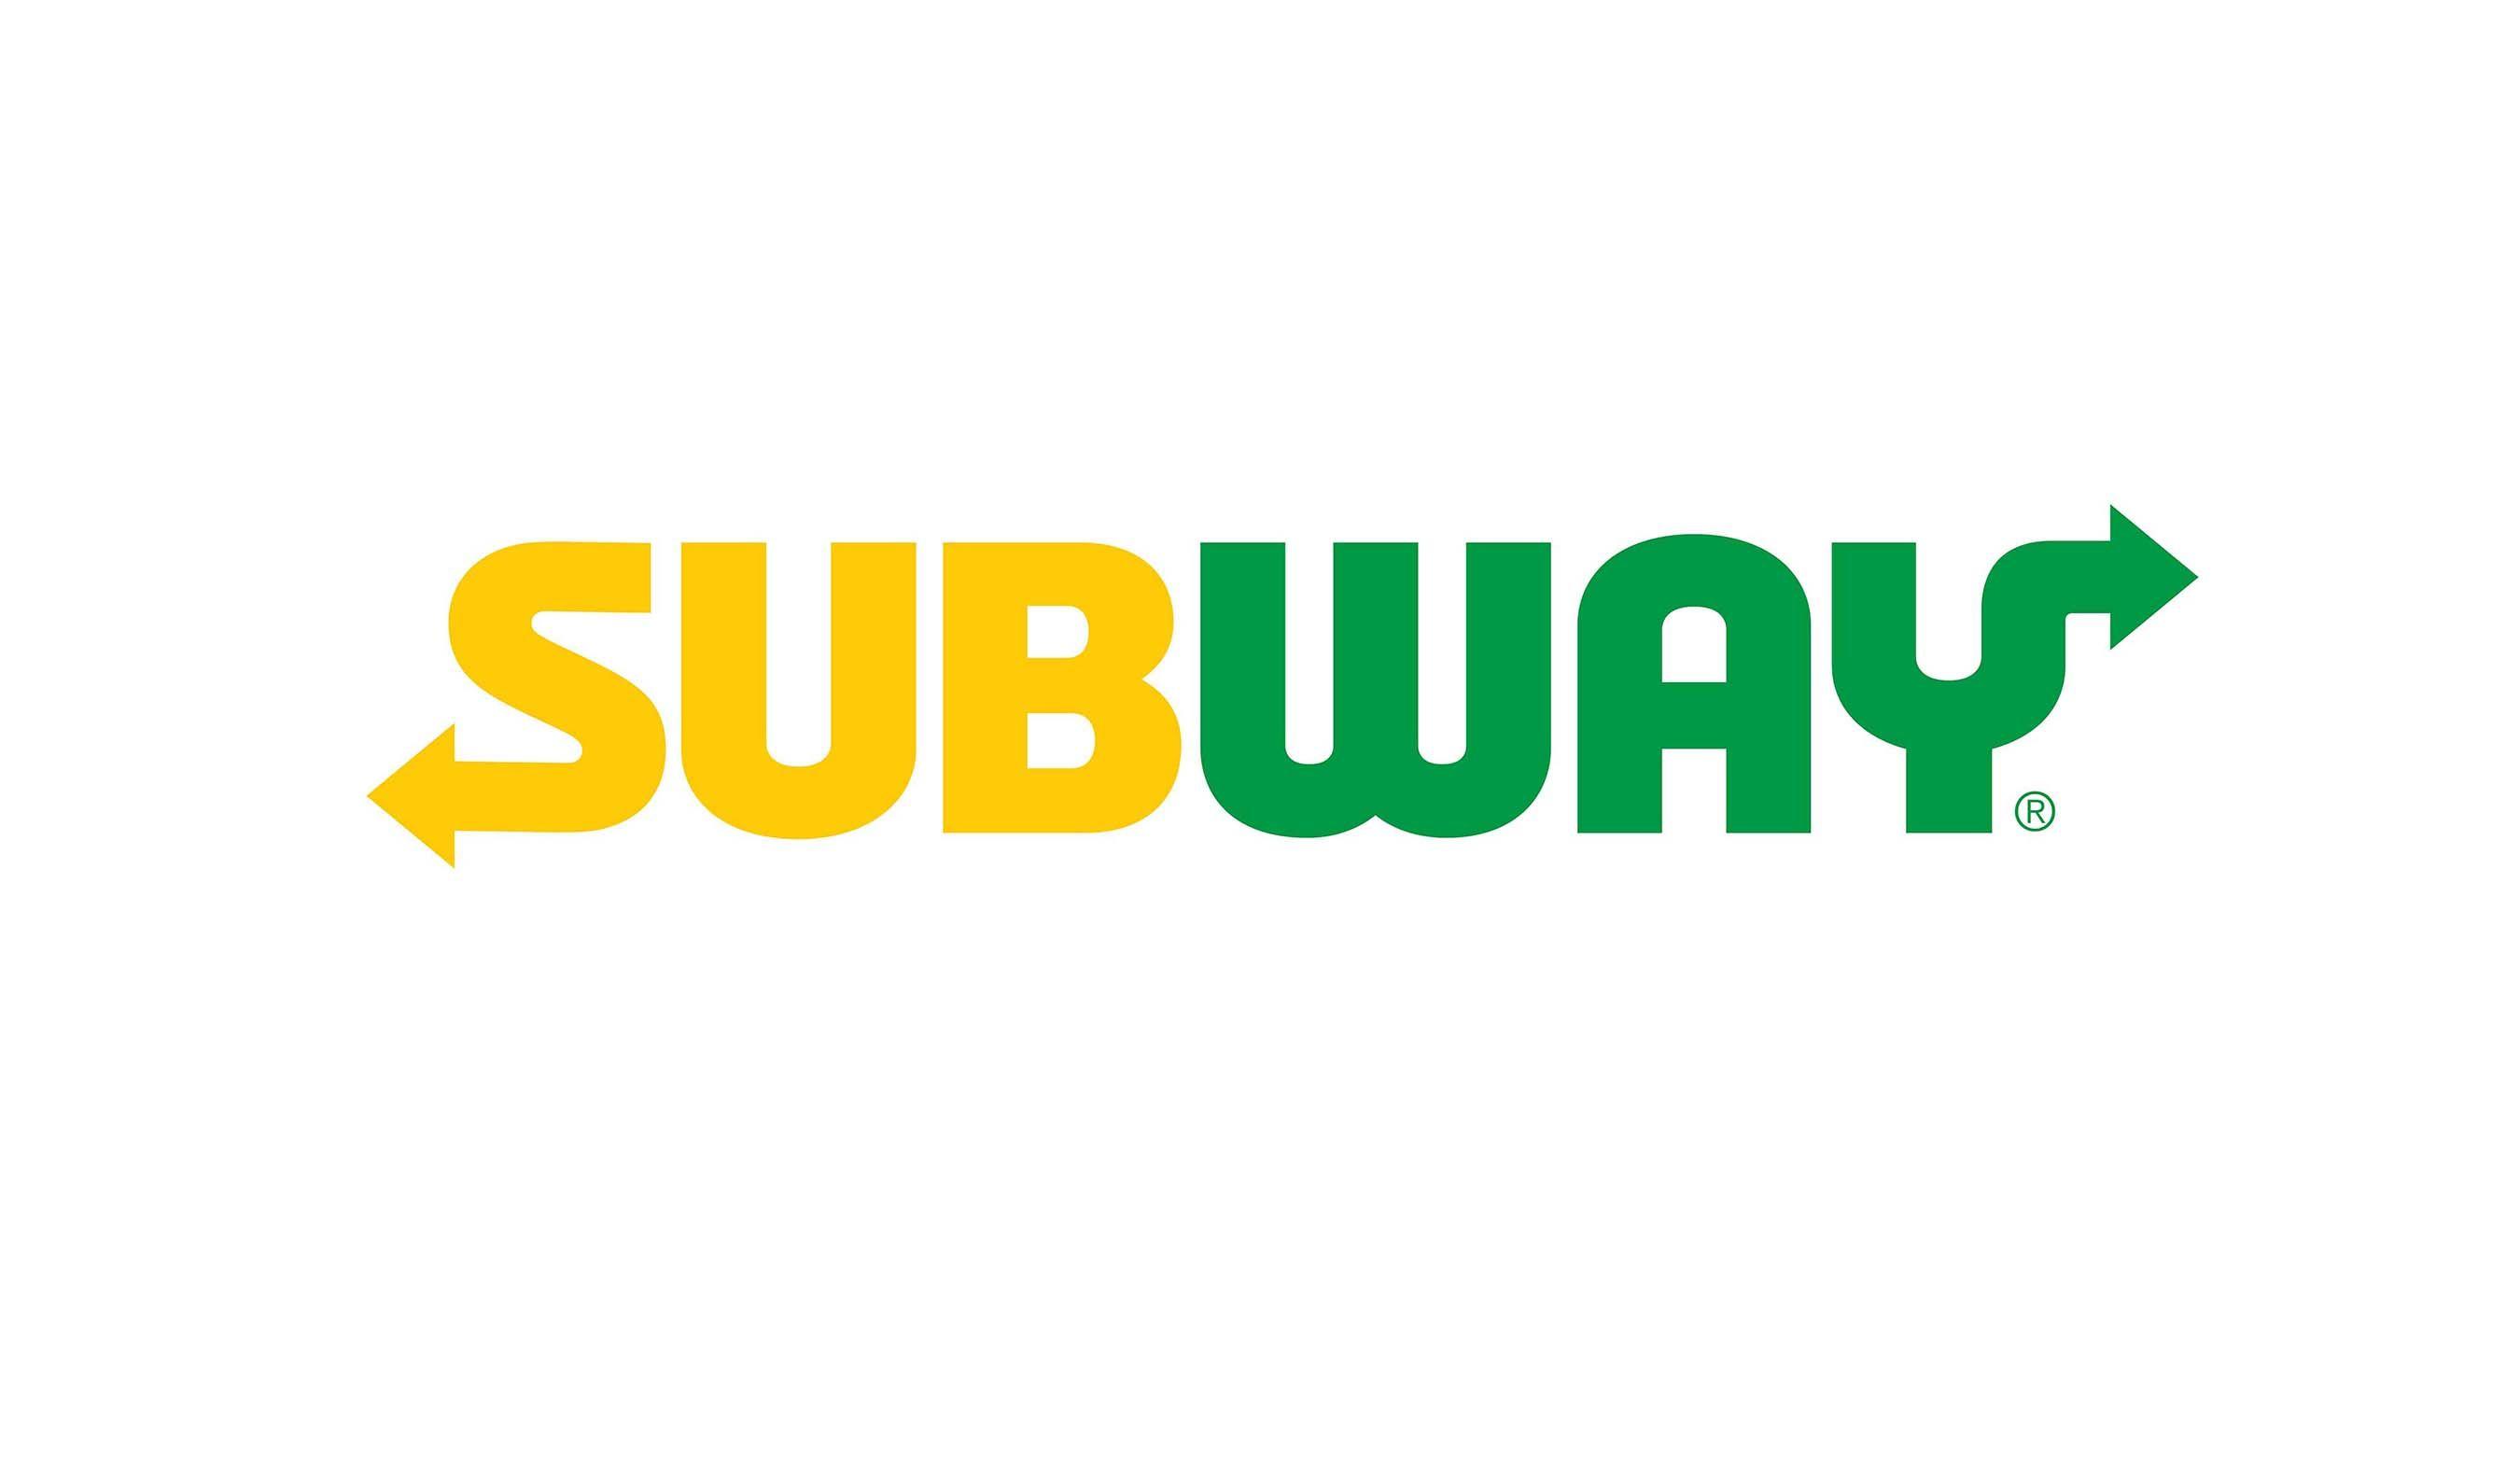 Subway 2018 Logo - Subway reveals minimalist new logo and symbol – Design Week